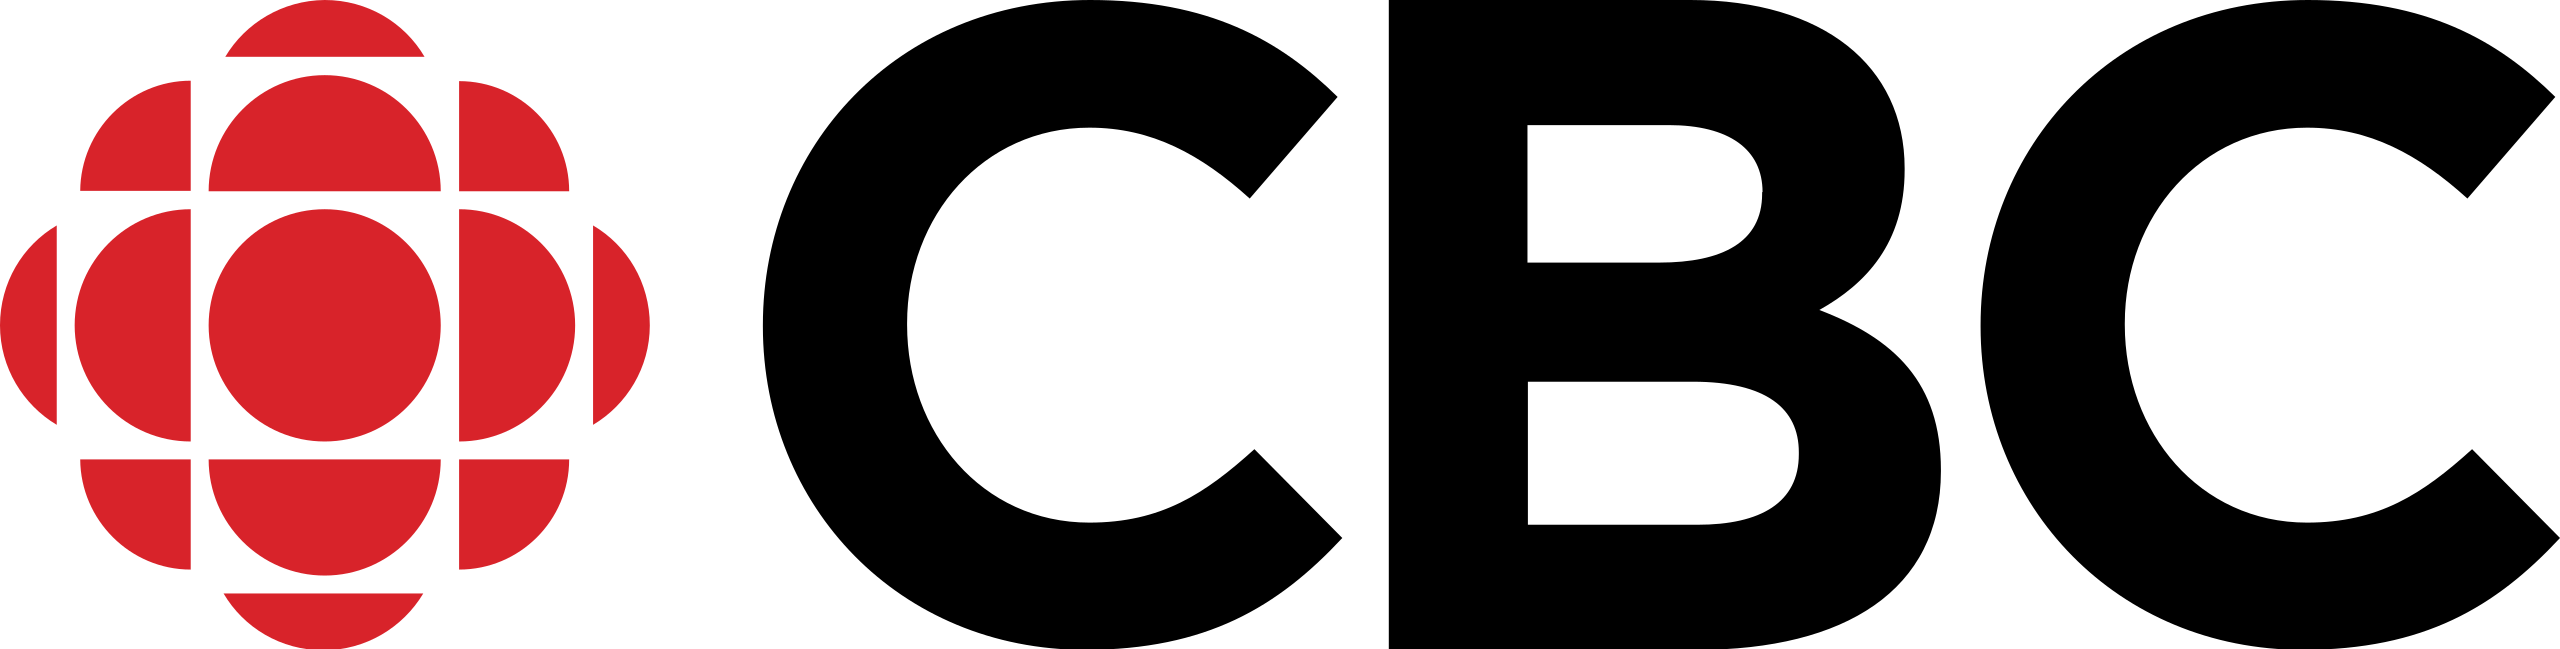 logo of cbc